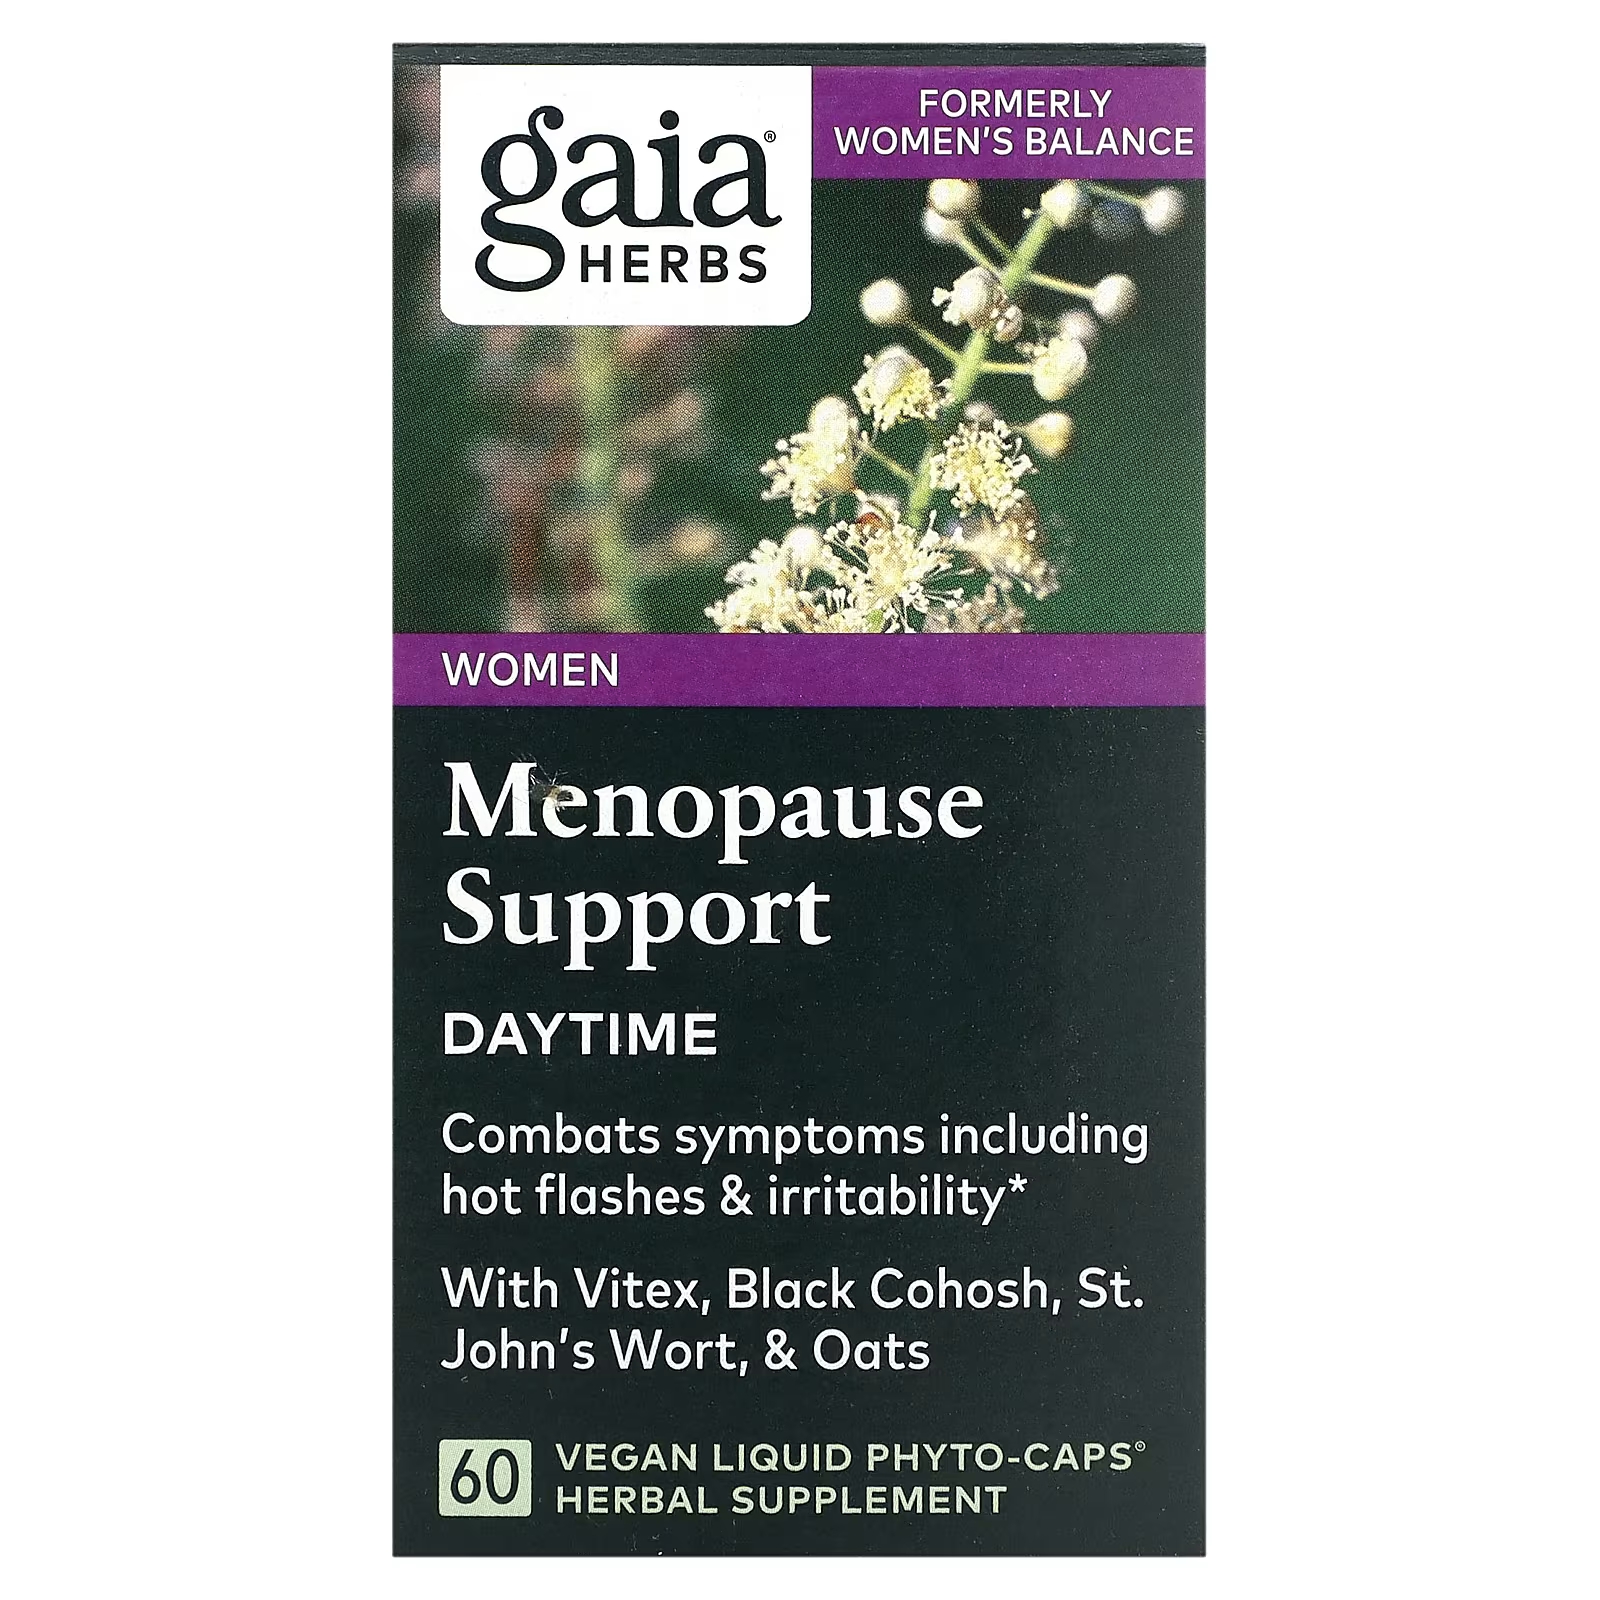 воронец клопогон вайт перл Растительная добавка Gaia Herbs поддержка менопаузы, 60 жидких фитокапсул